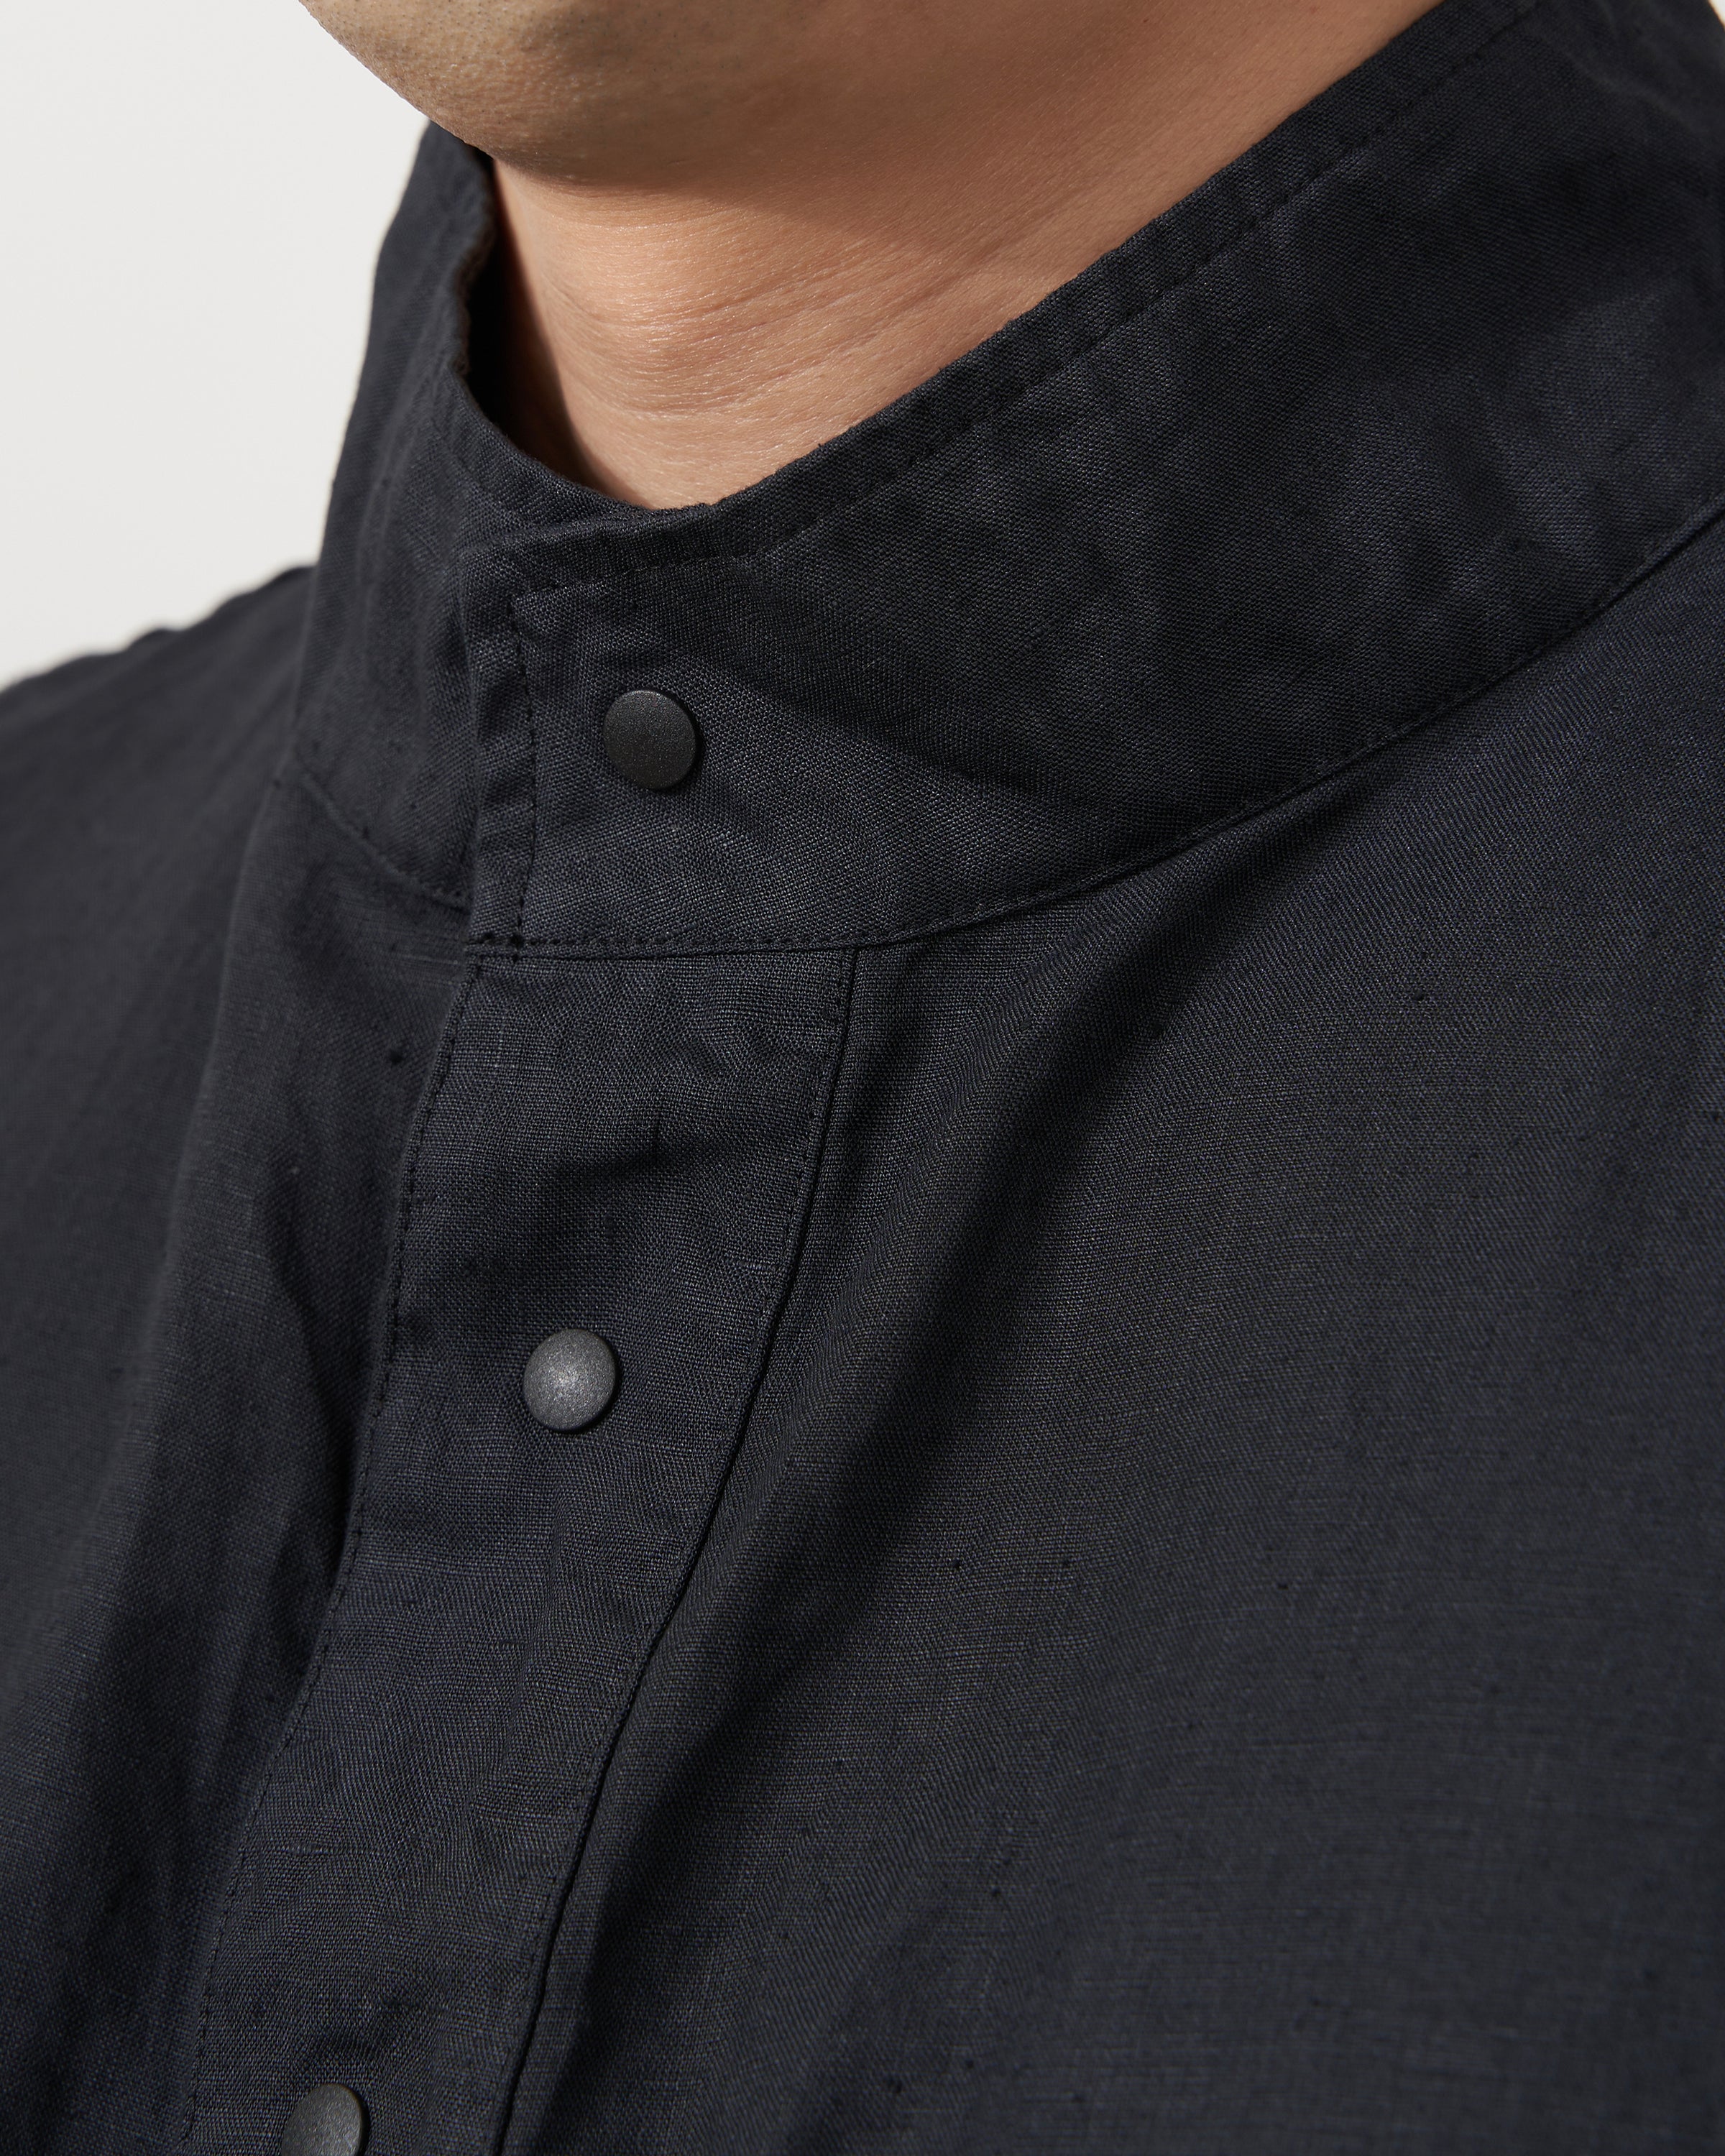 S H ANRK-004 Anorak Shirt(Linen Garment Dye), Ink Black